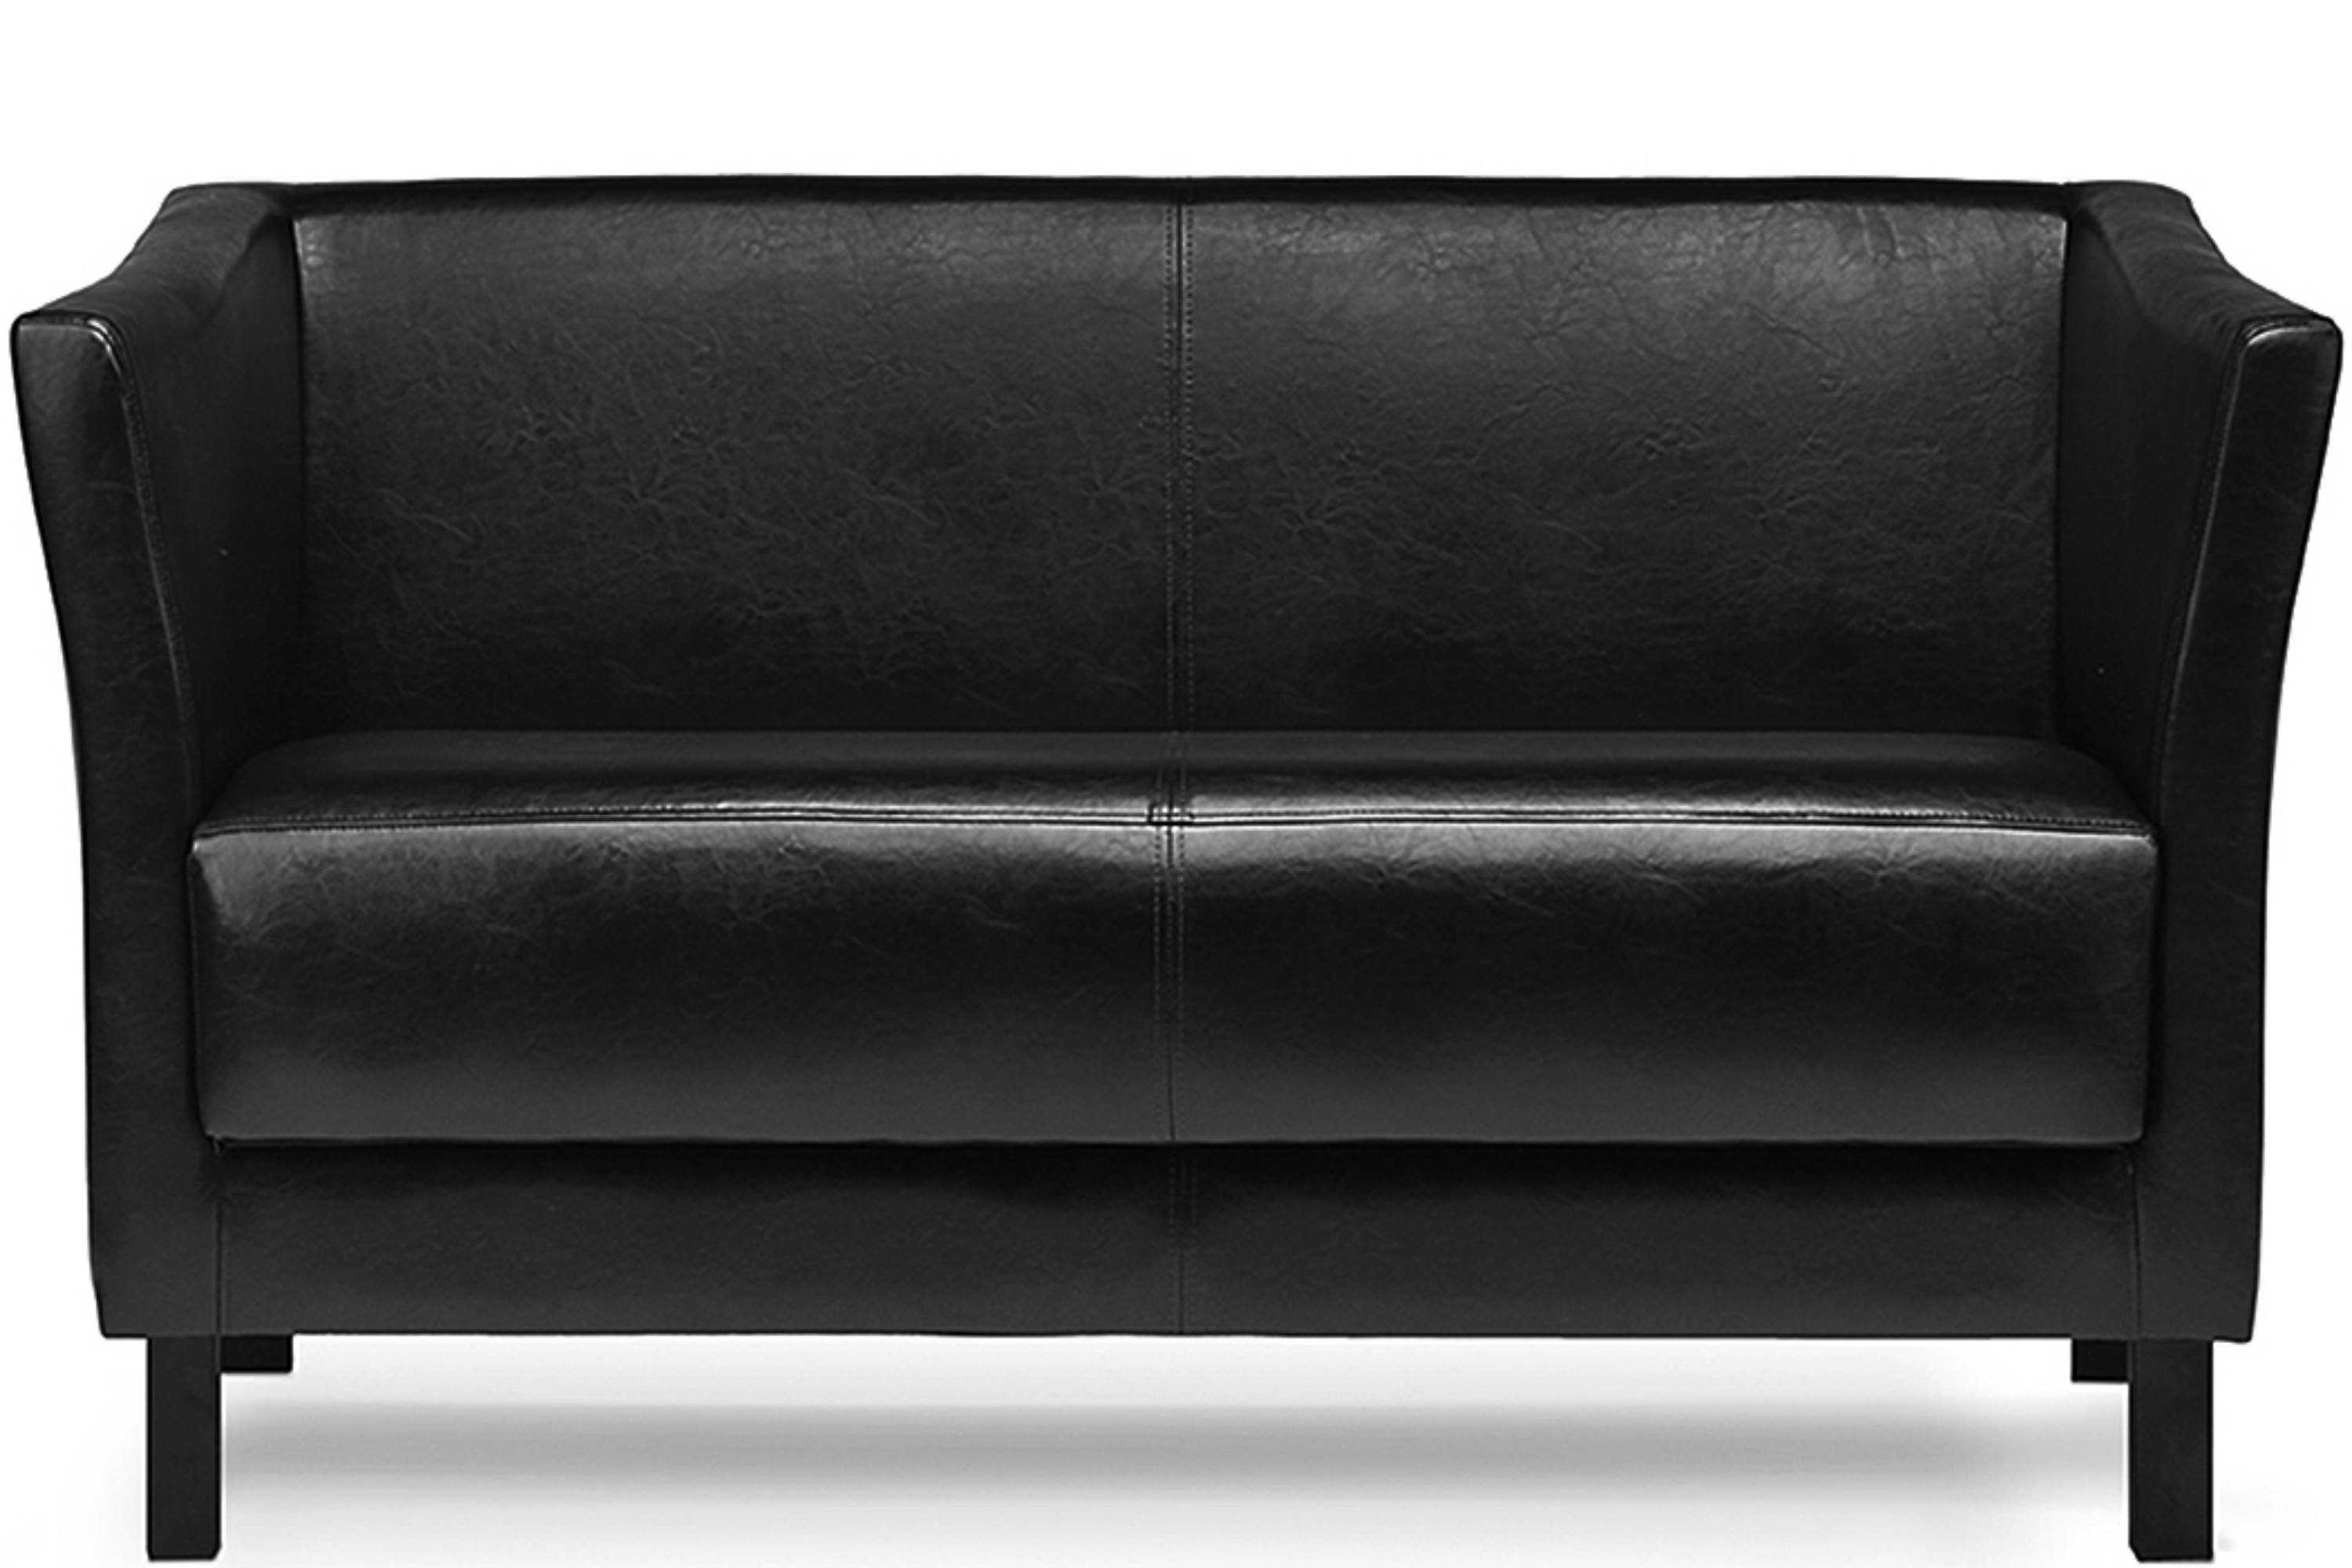 Konsimo 2-Sitzer ESPECTO Sofa 2 Personen, weiche Sitzfläche und hohe Rückenlehne, Kunstleder, hohe Massivholzbeine schwarz | schwarz